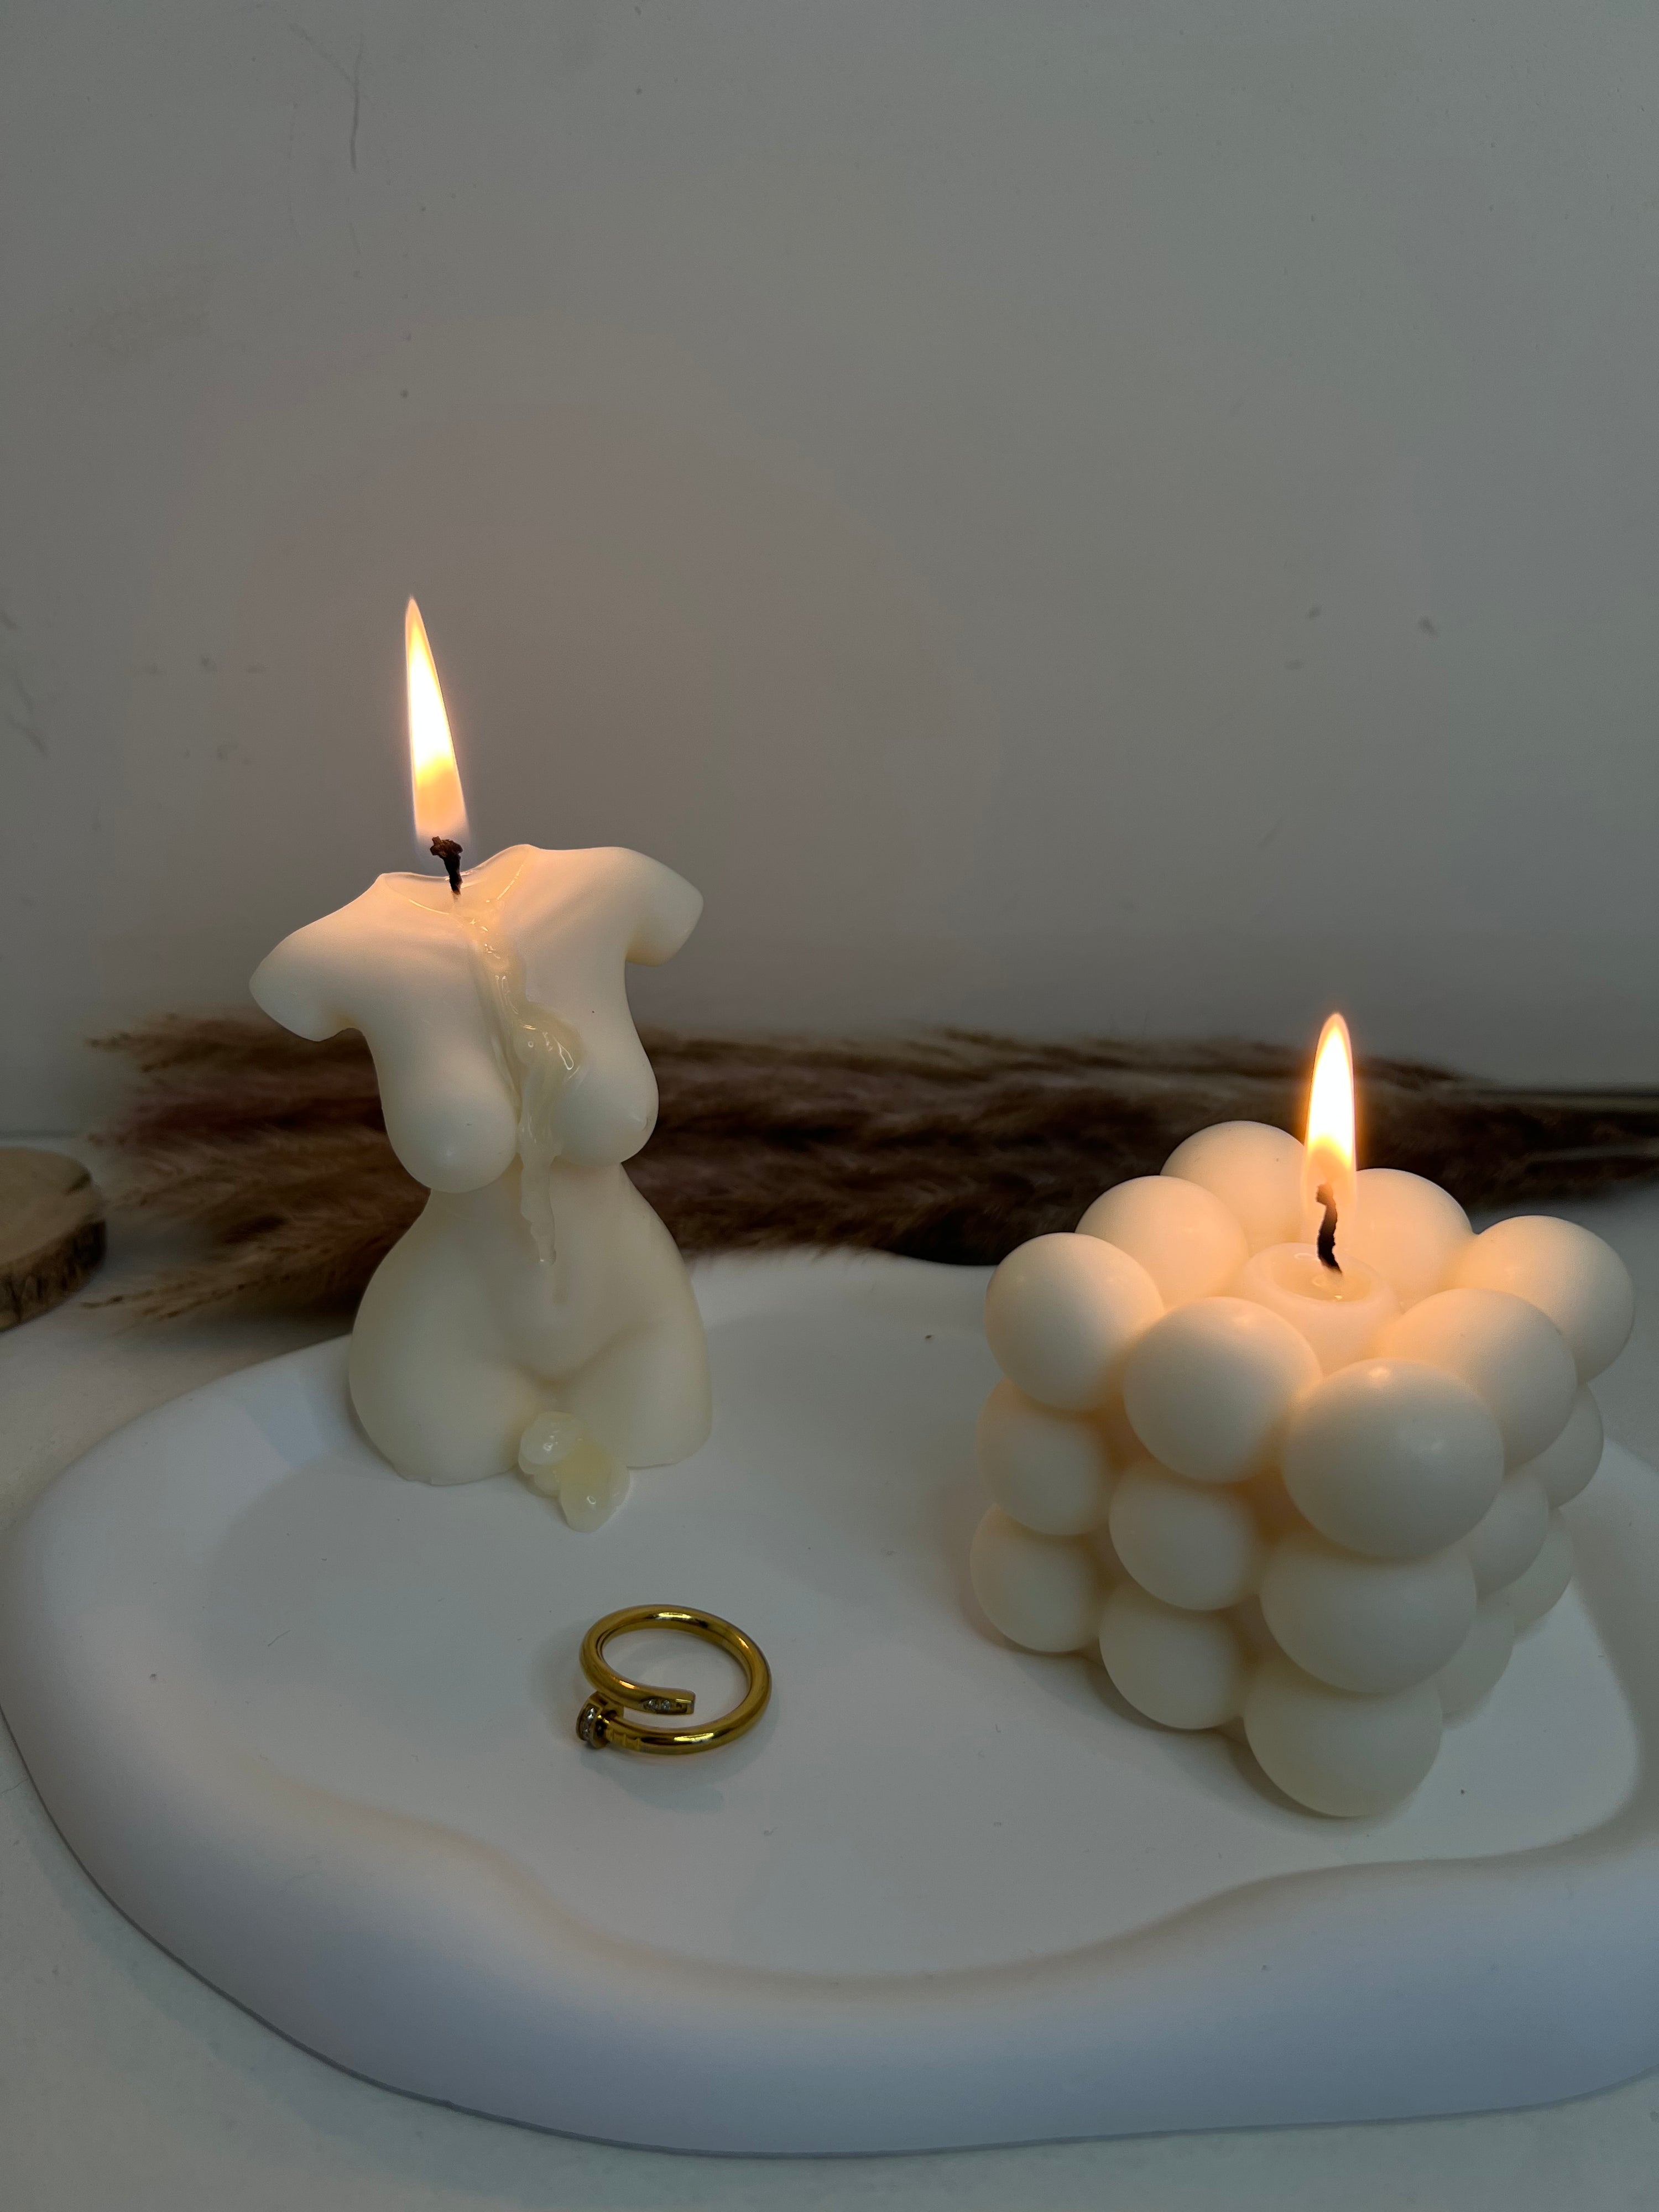 Realistisch Dag juni Devotion Candles, exclusieve kaarsen en home decoratie! – Devotion Candles